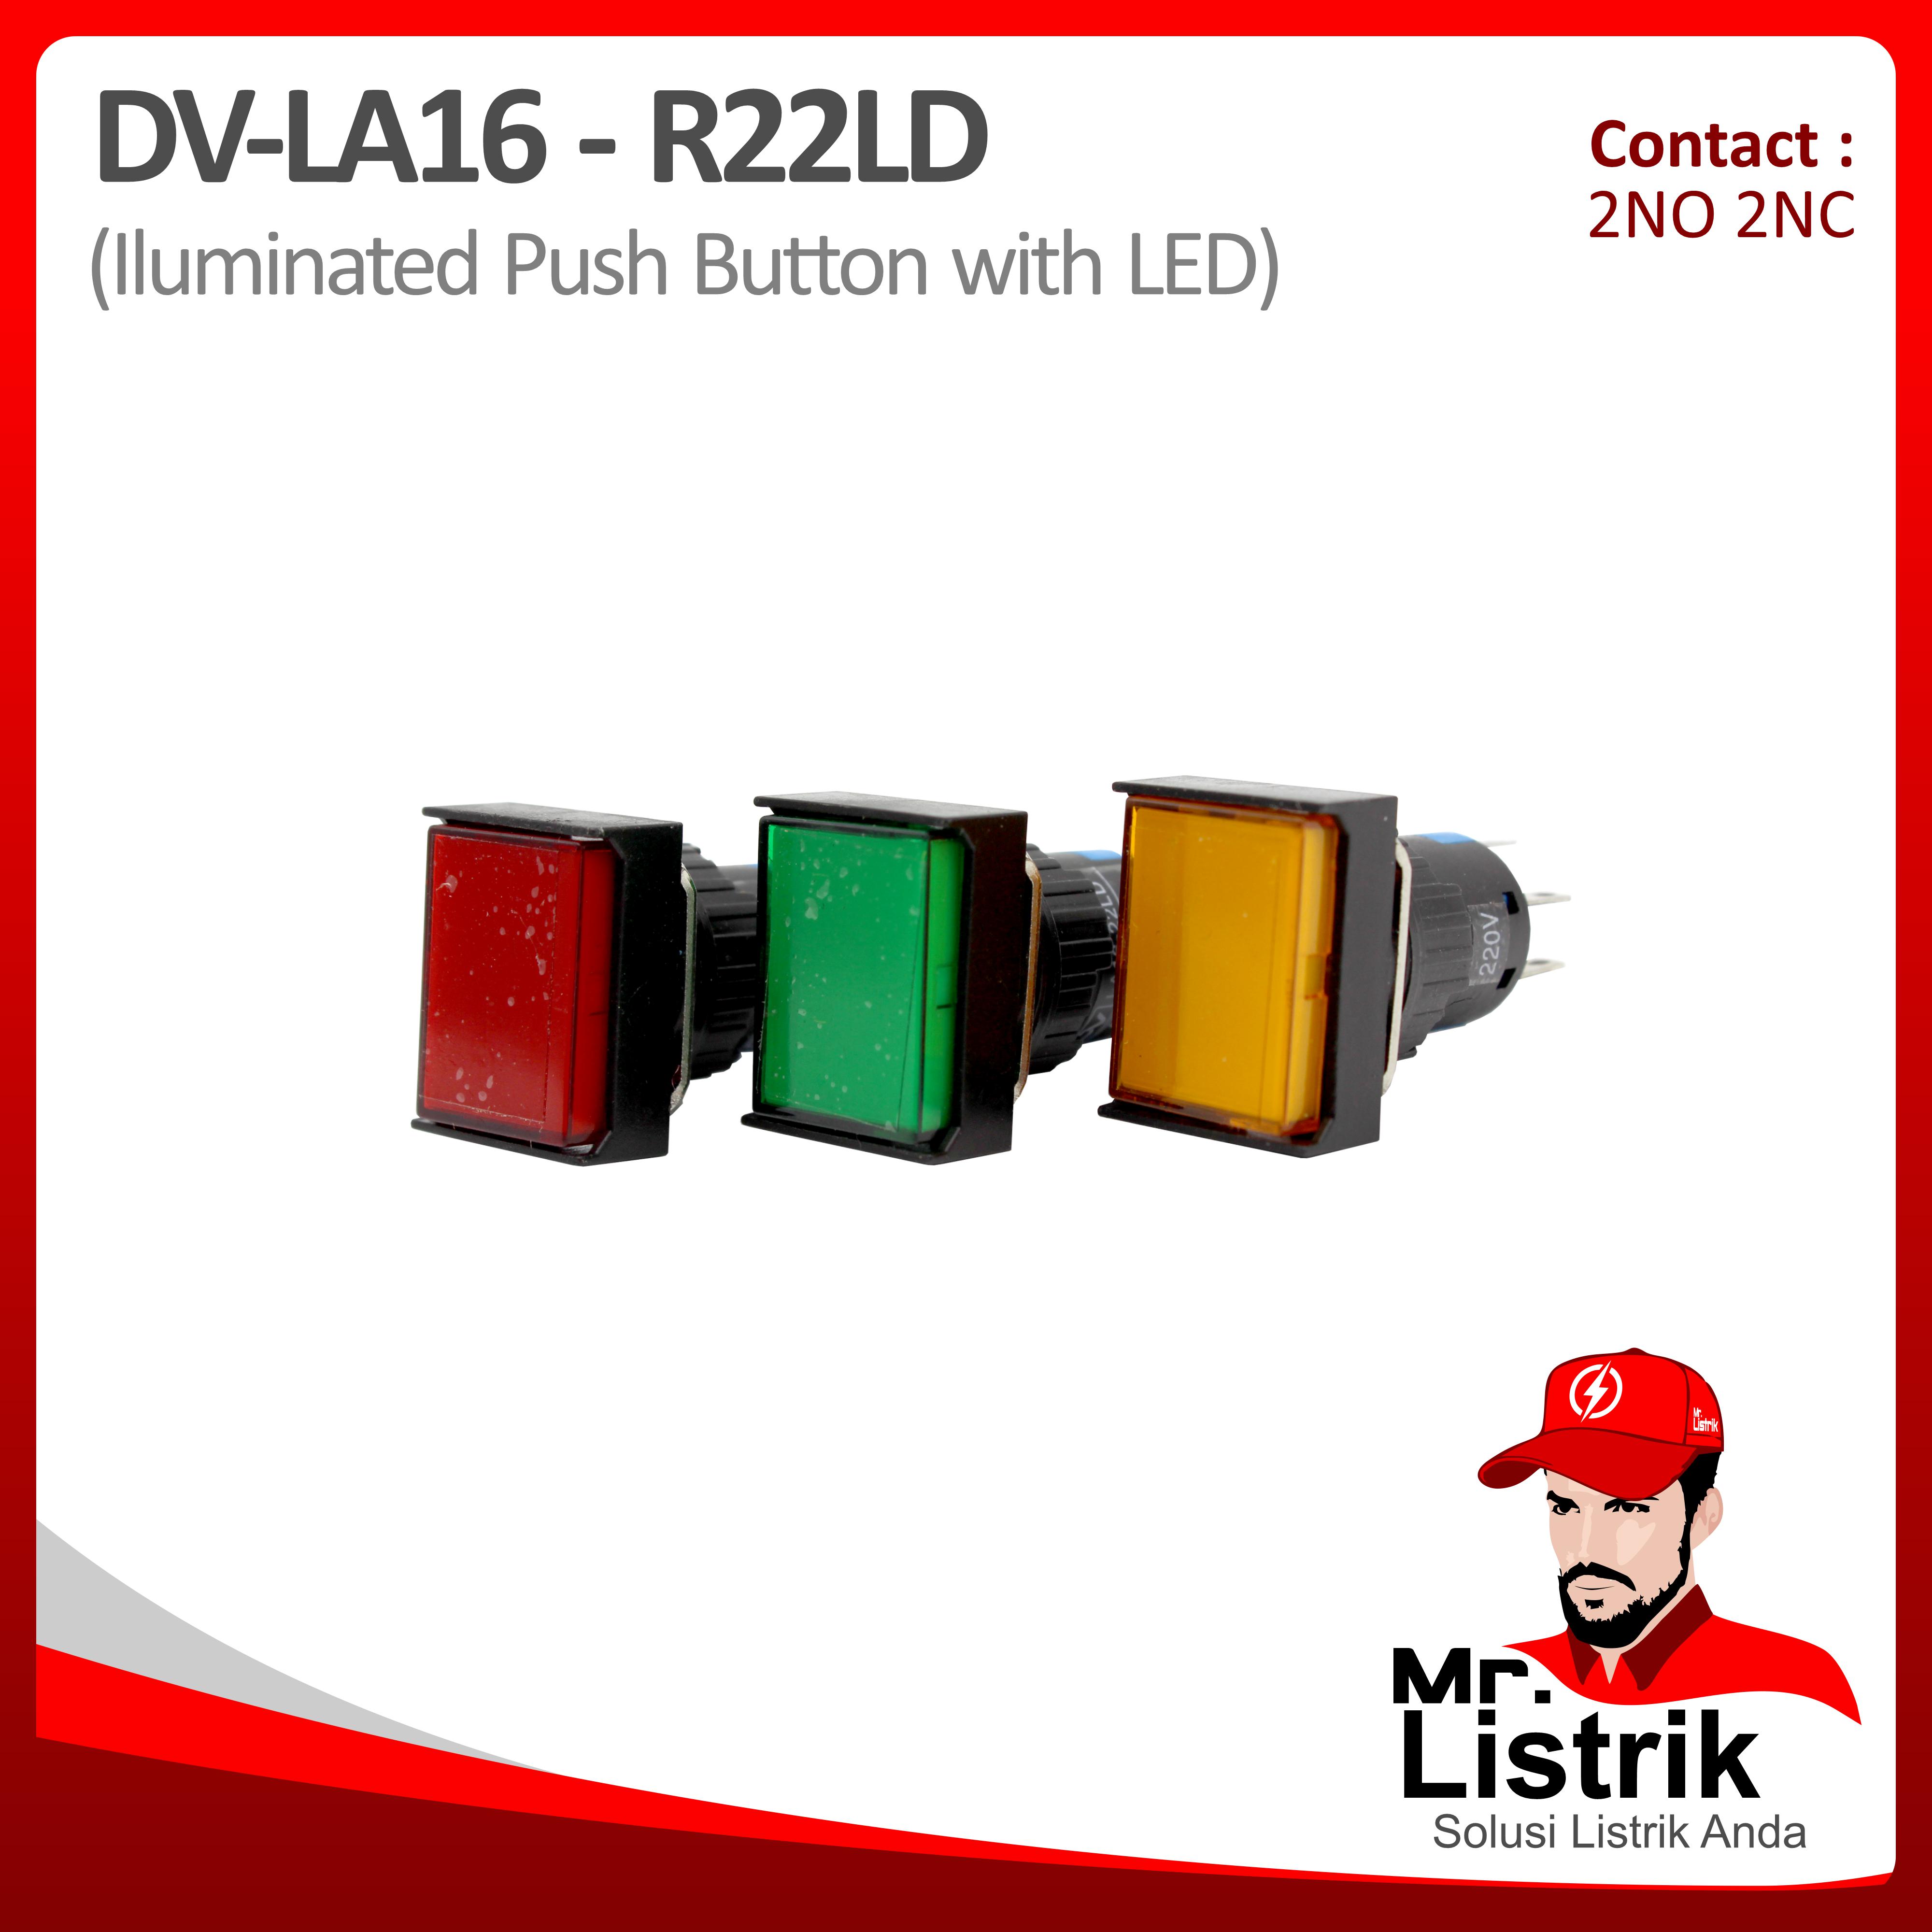 Push Button LED 16mm DV Pin Contact Persegi Panjang Lock 2NO 2NC LA16-R22LD - Red / Green / Yellow